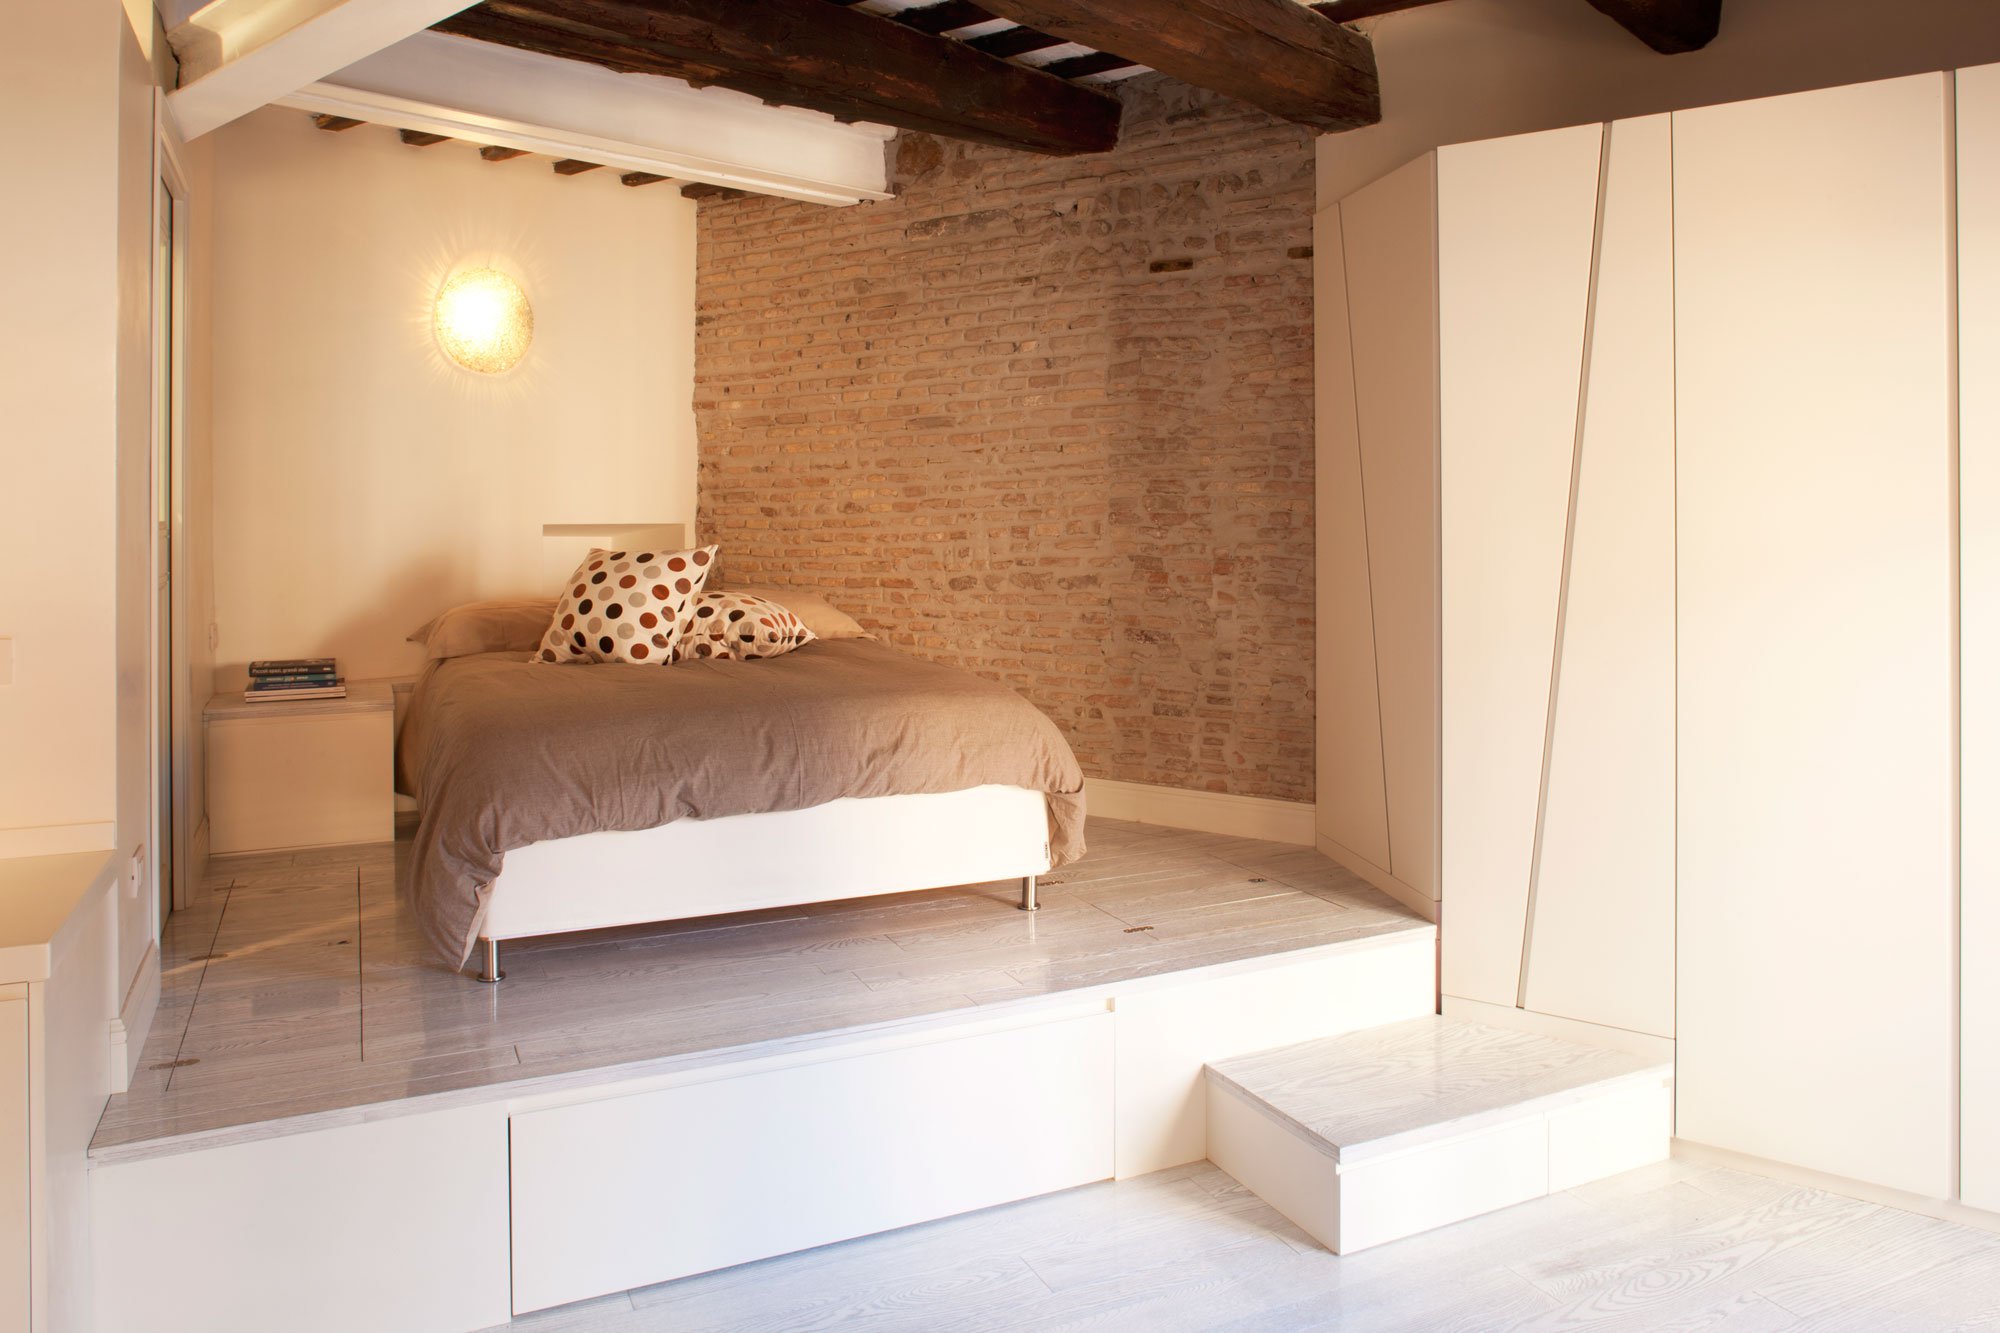 кровати подиумы в интерьере маленькой квартиры